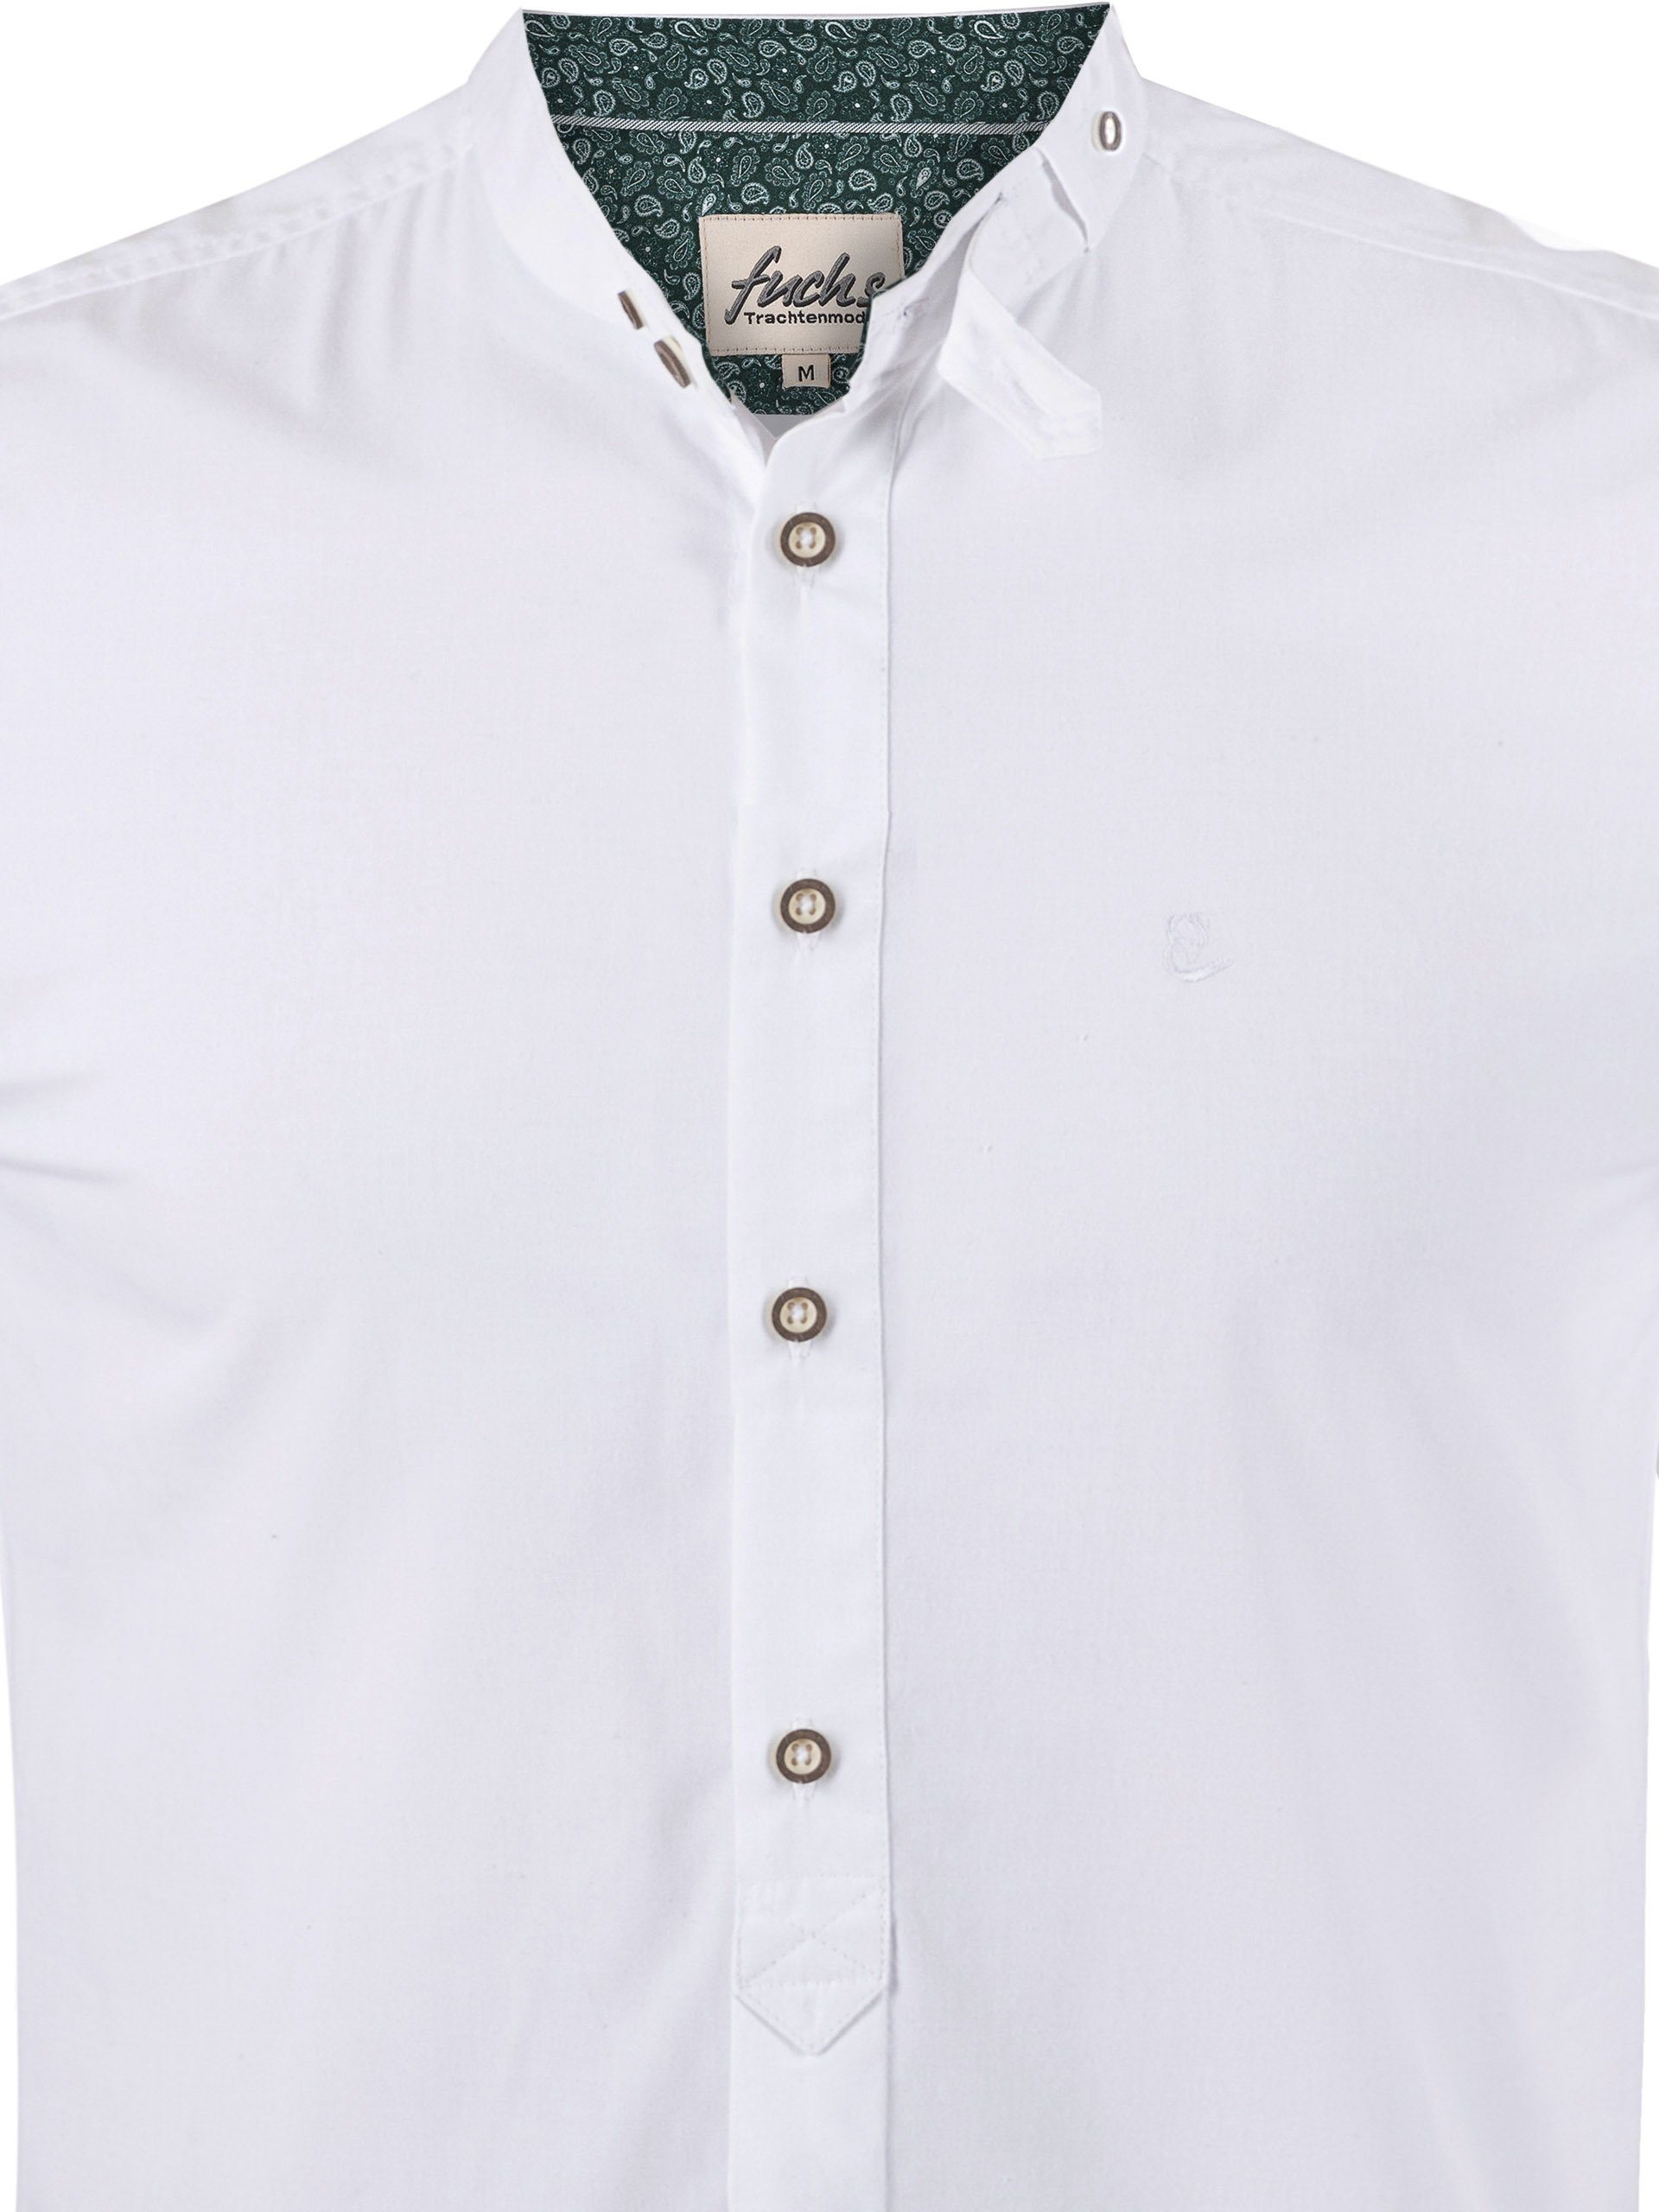 weiß-tanne Hemd FUCHS Albert Stehkragen Trachtenhemd mit